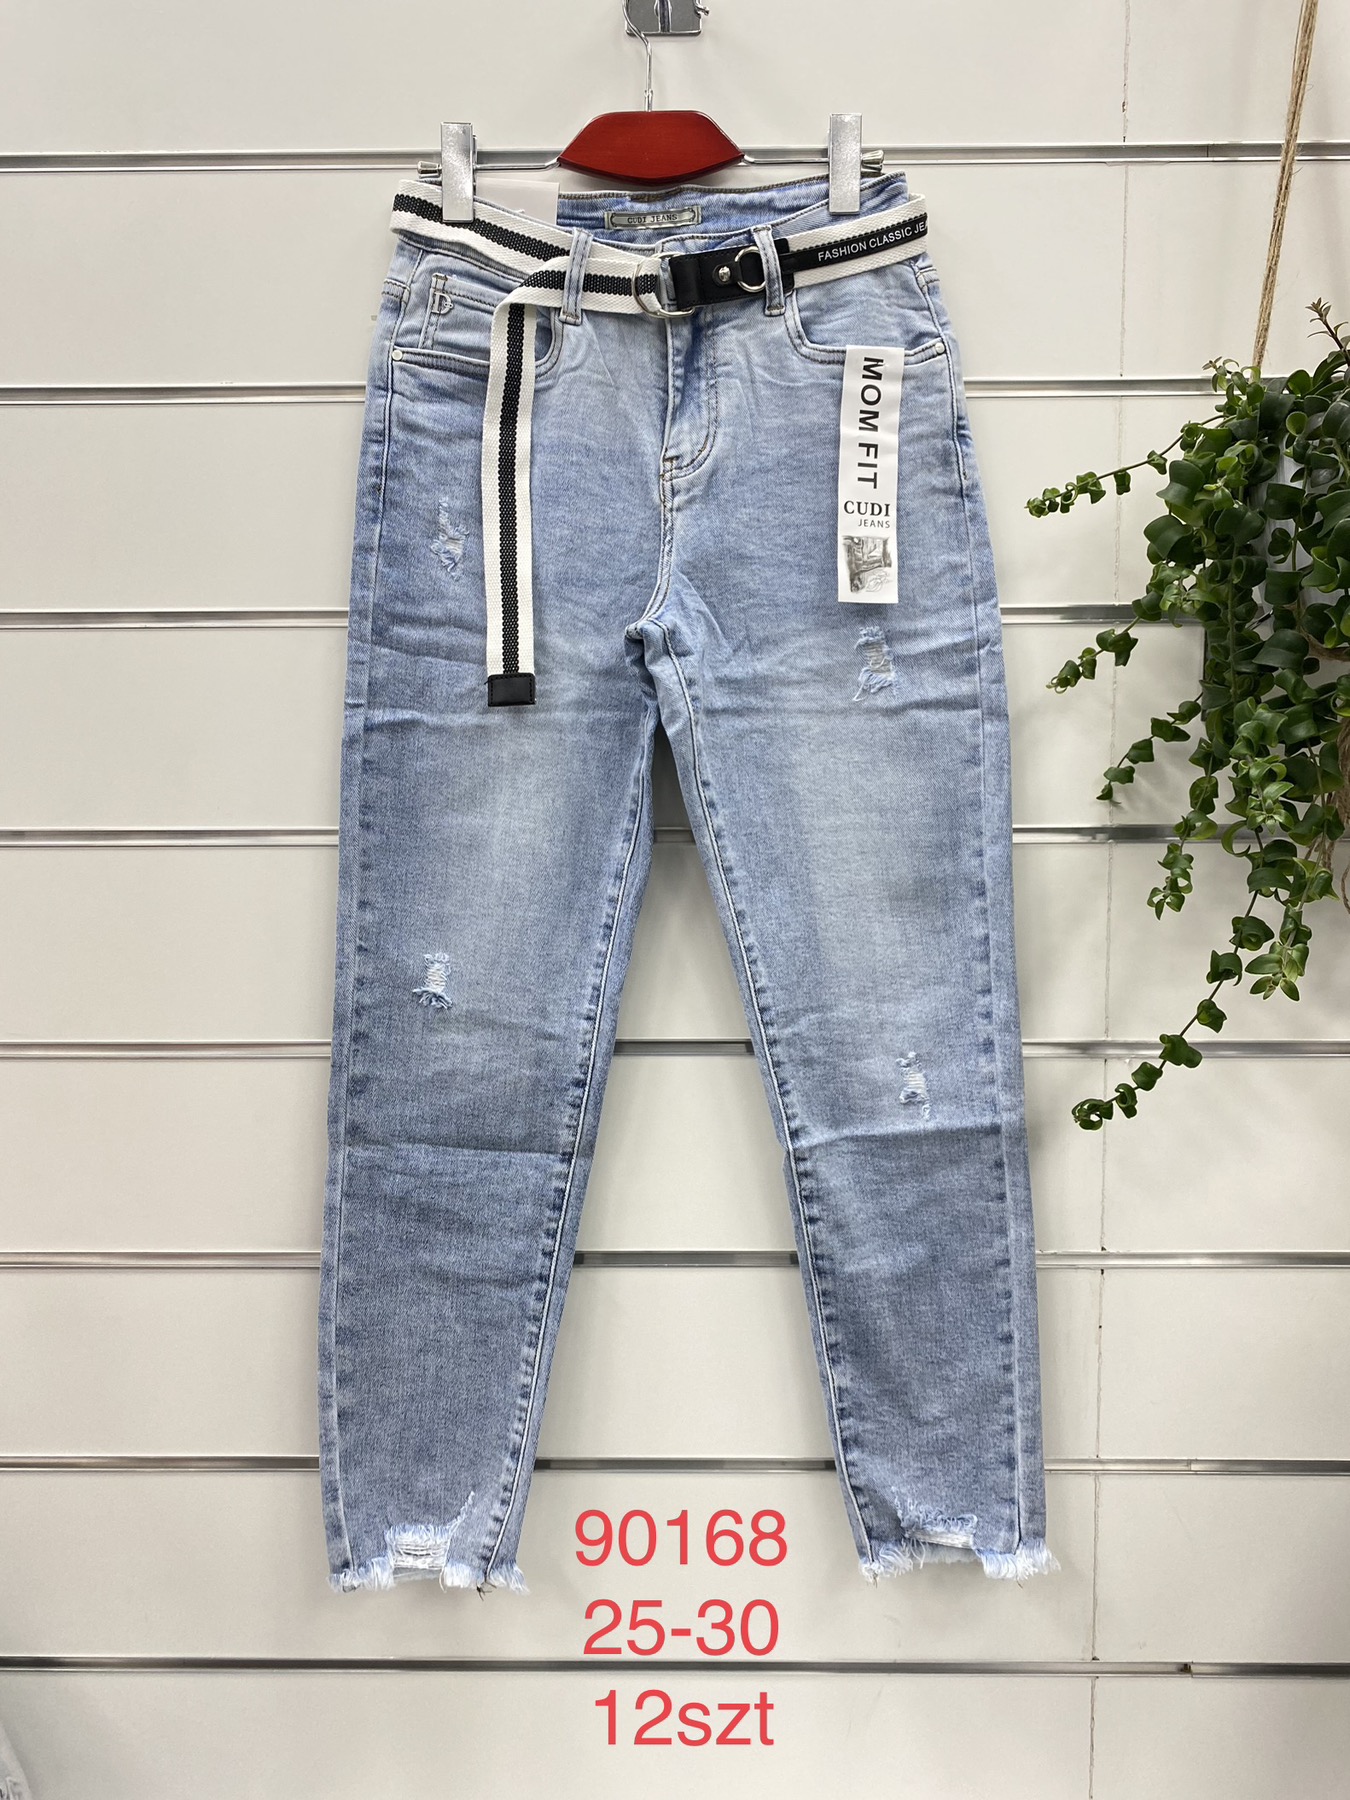 Spodnie damskie jeans Roz  25-30.  1 kolor . Paczka 12szt